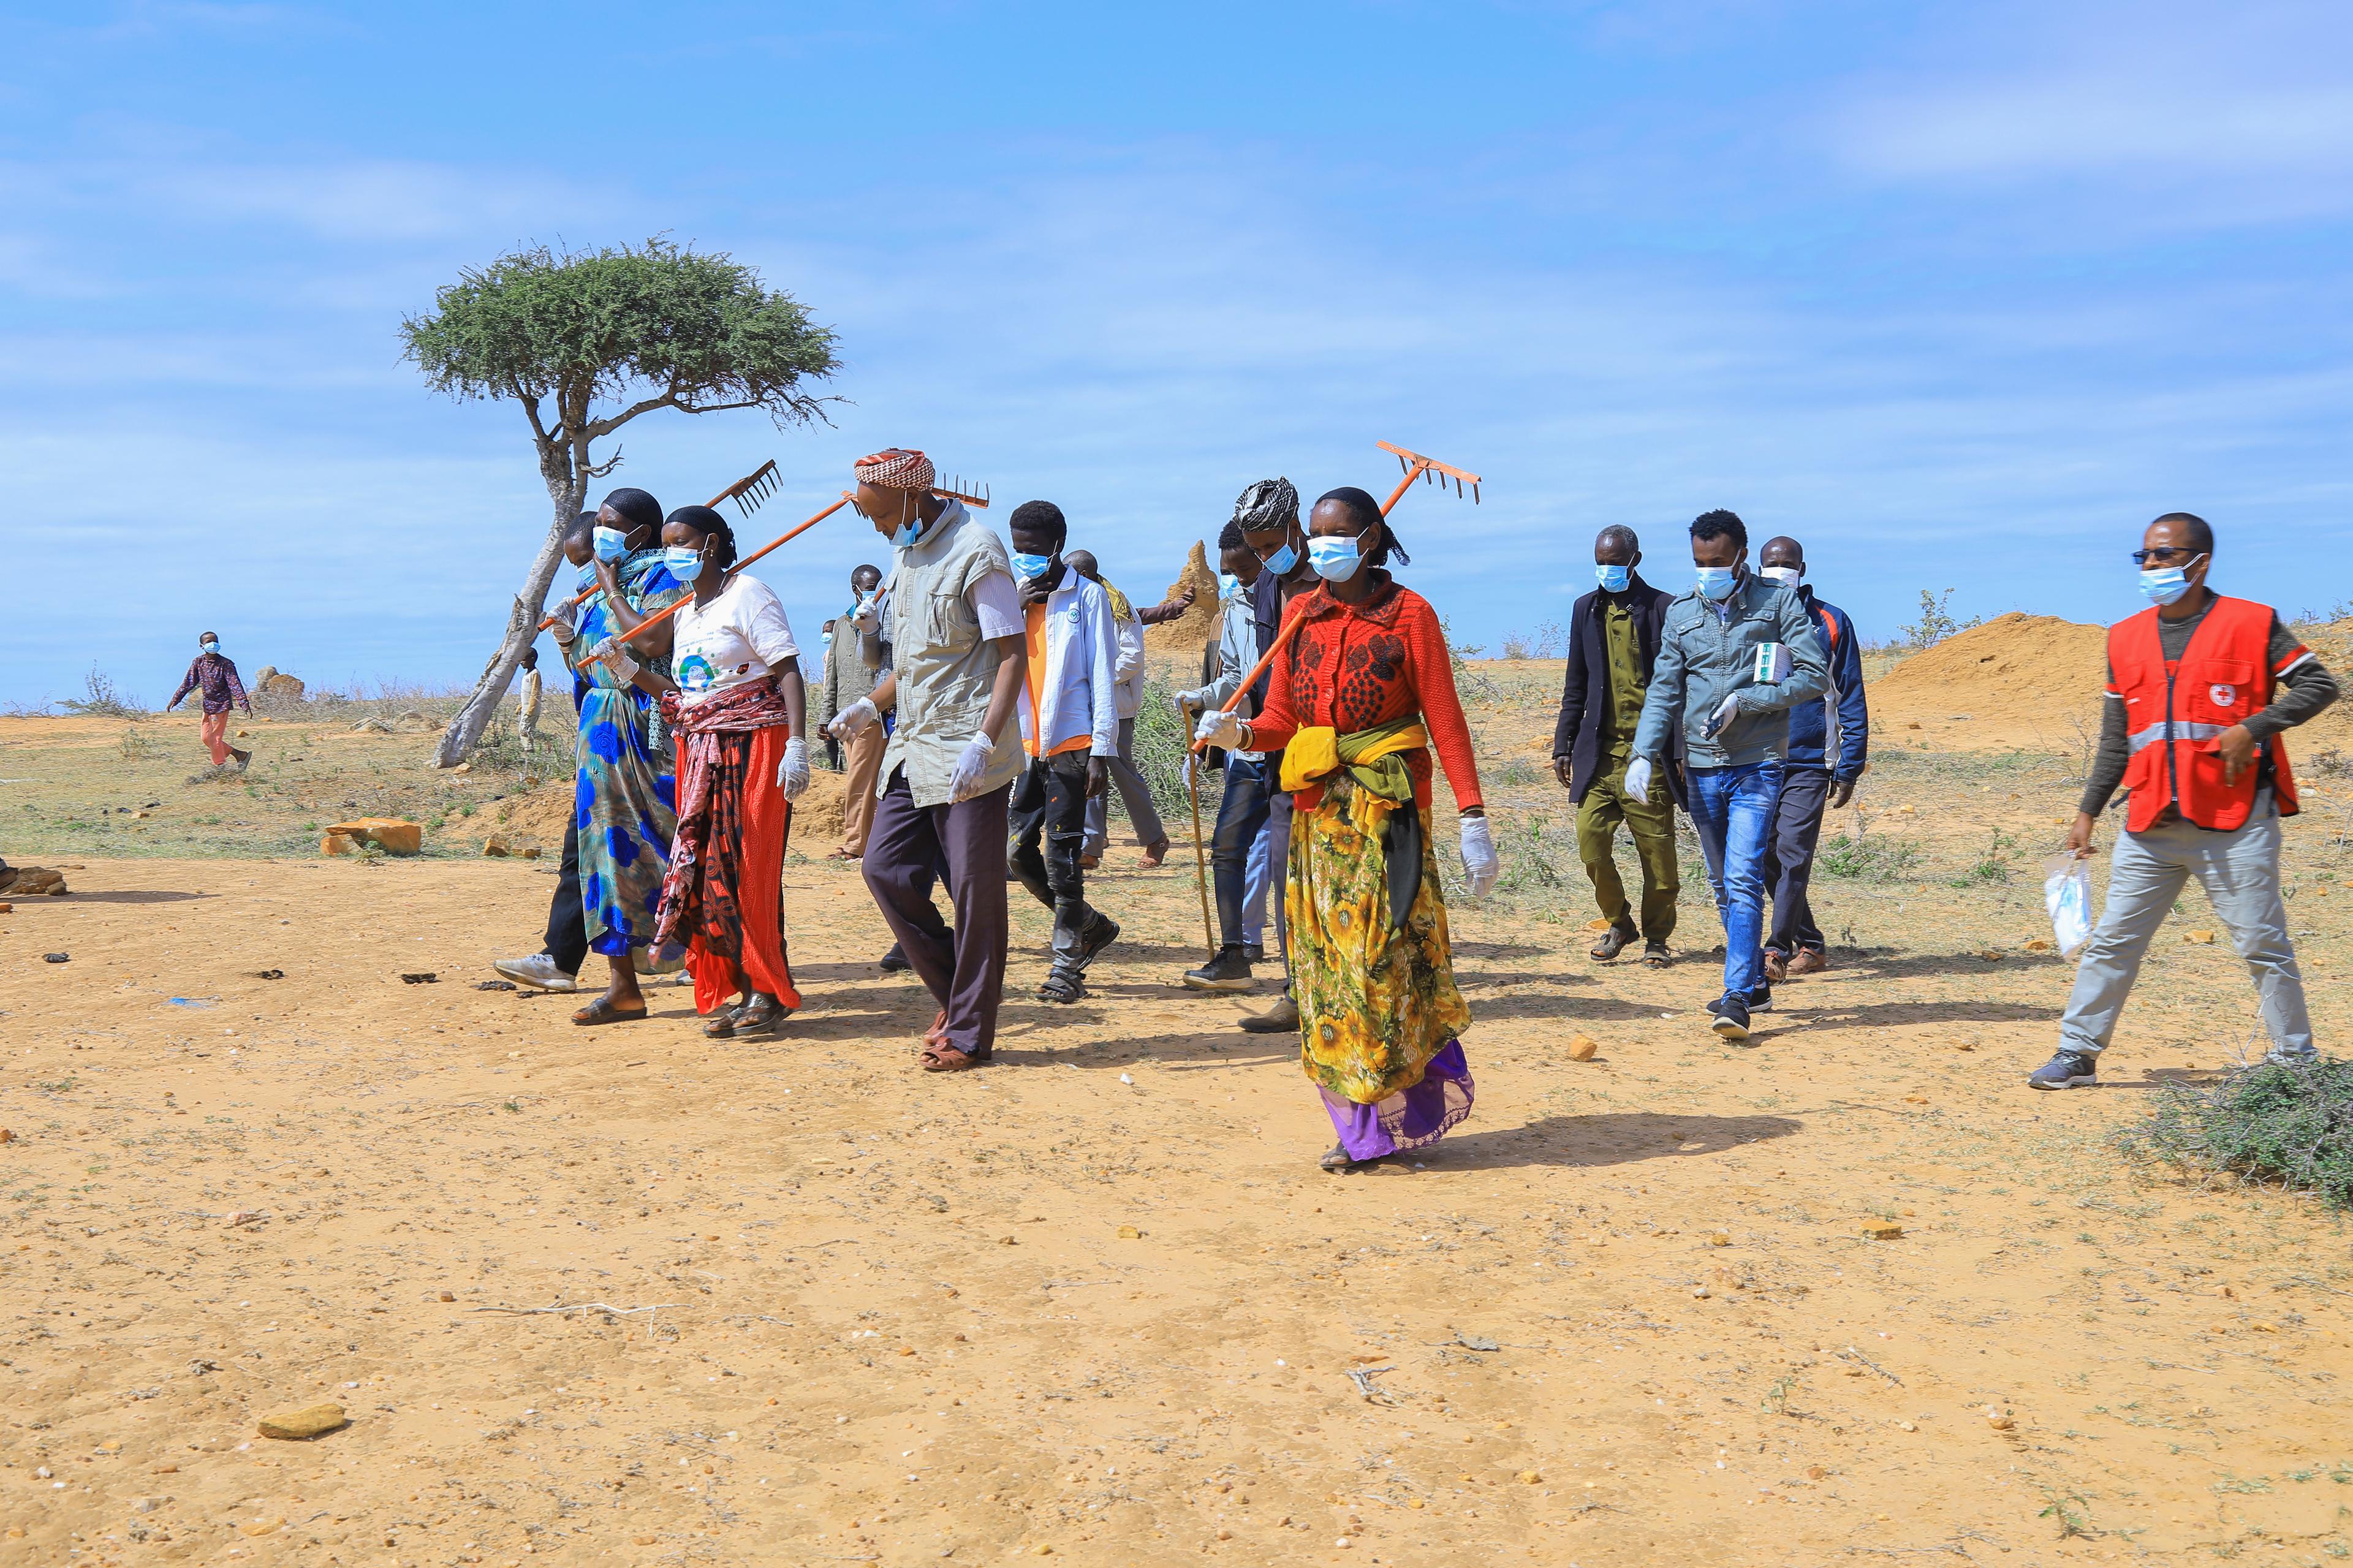 Volontari della Croce Rossa, tra cui Hacure, 37 anni, e Borte, 56 anni, mentre si recano a smaltire il bestiame morto nella zona di Borena, Moyale, Etiopia. Portano rastrelli e indossano maschere.